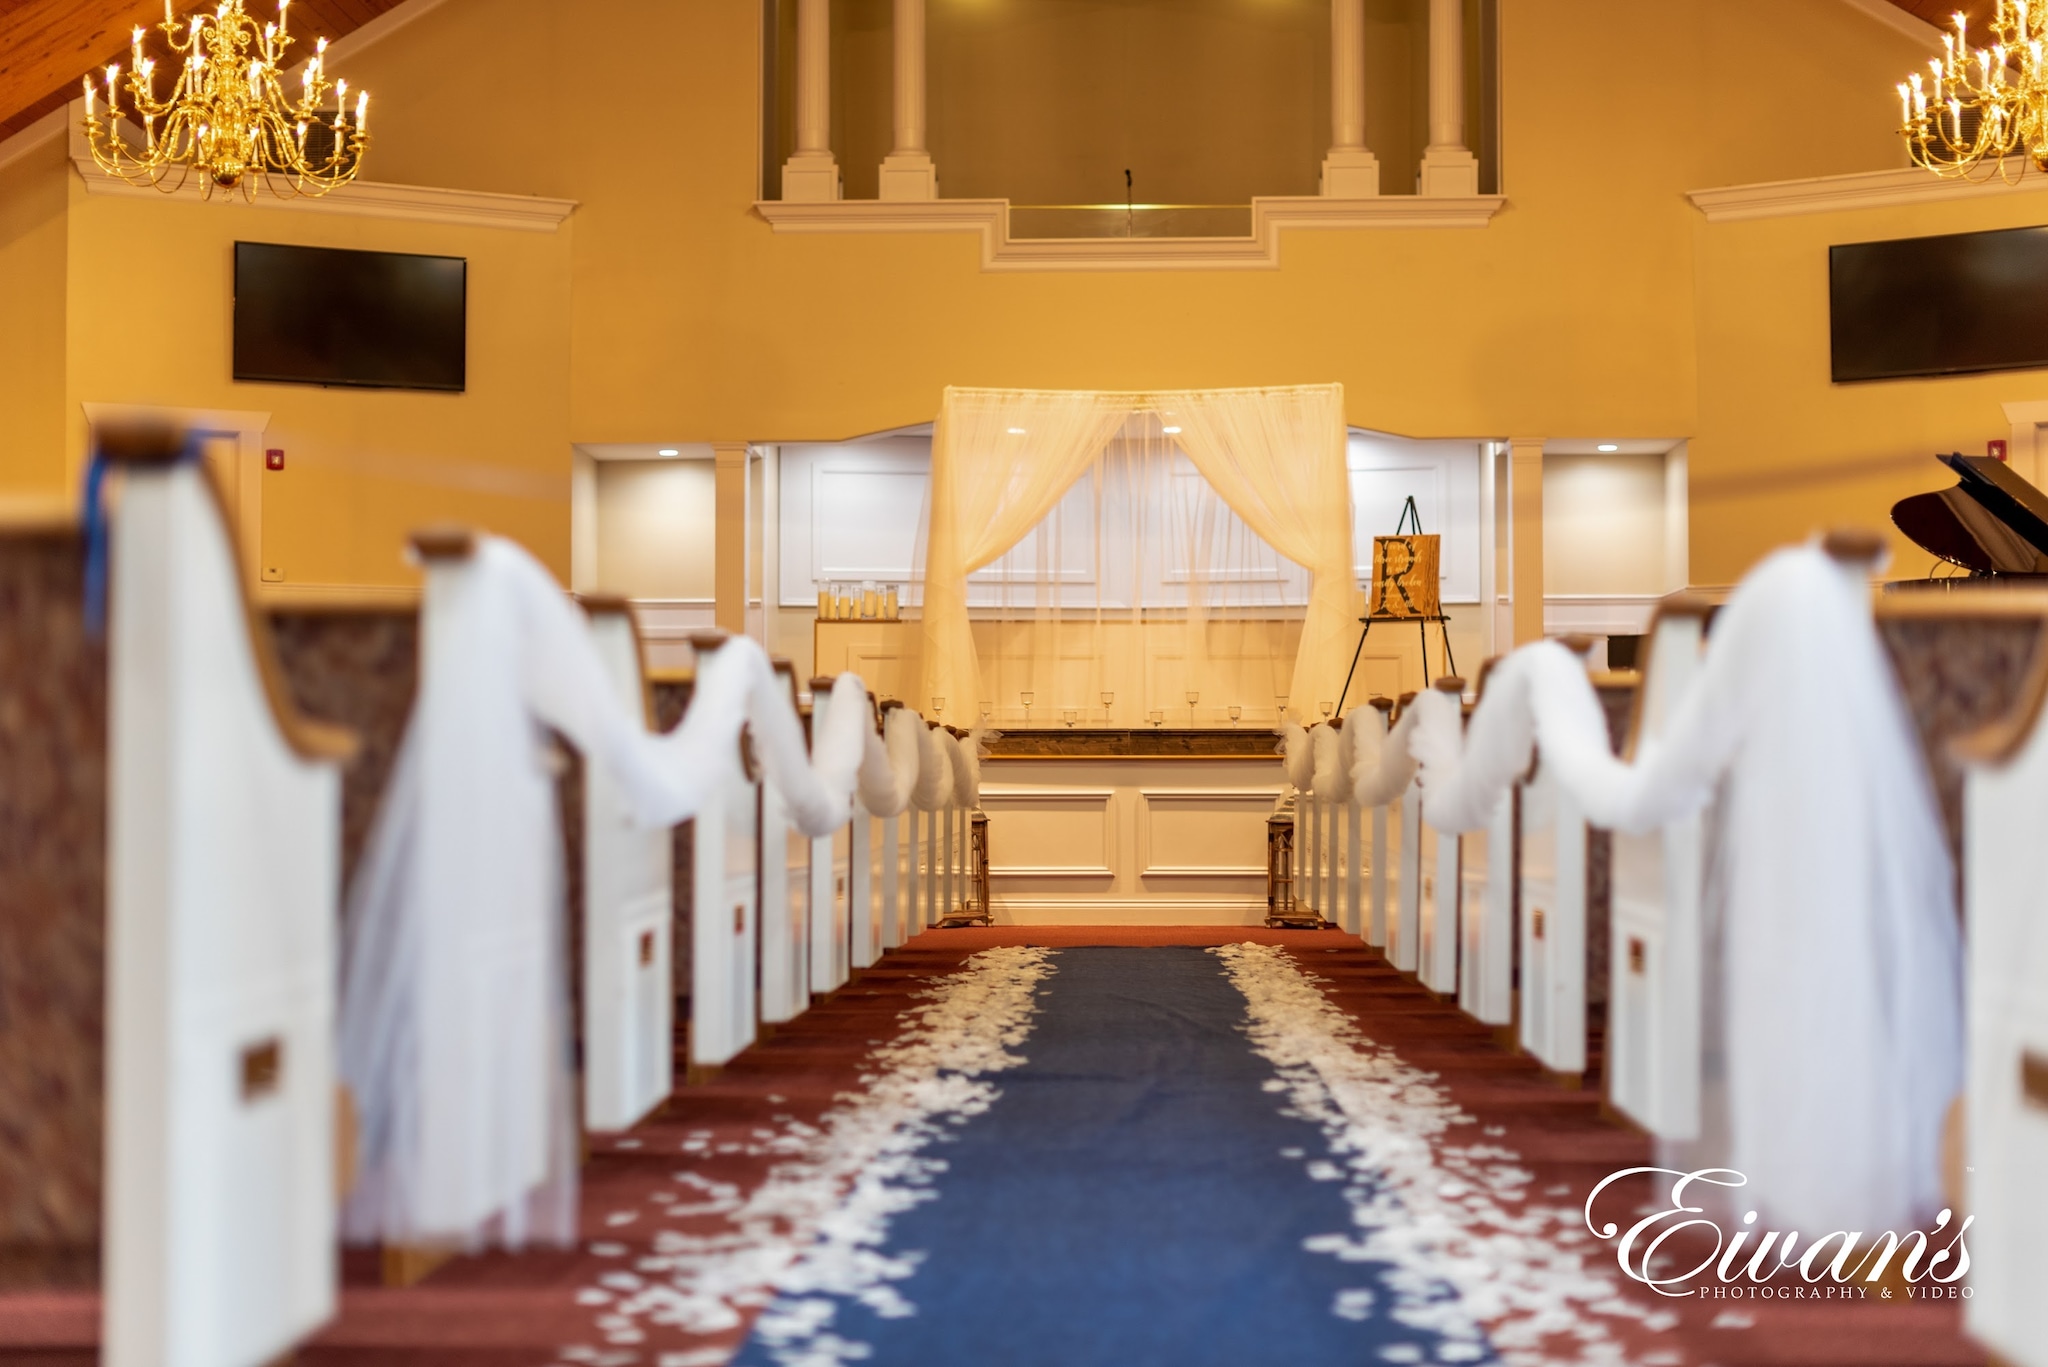 Ideas For Church Wedding Decorations